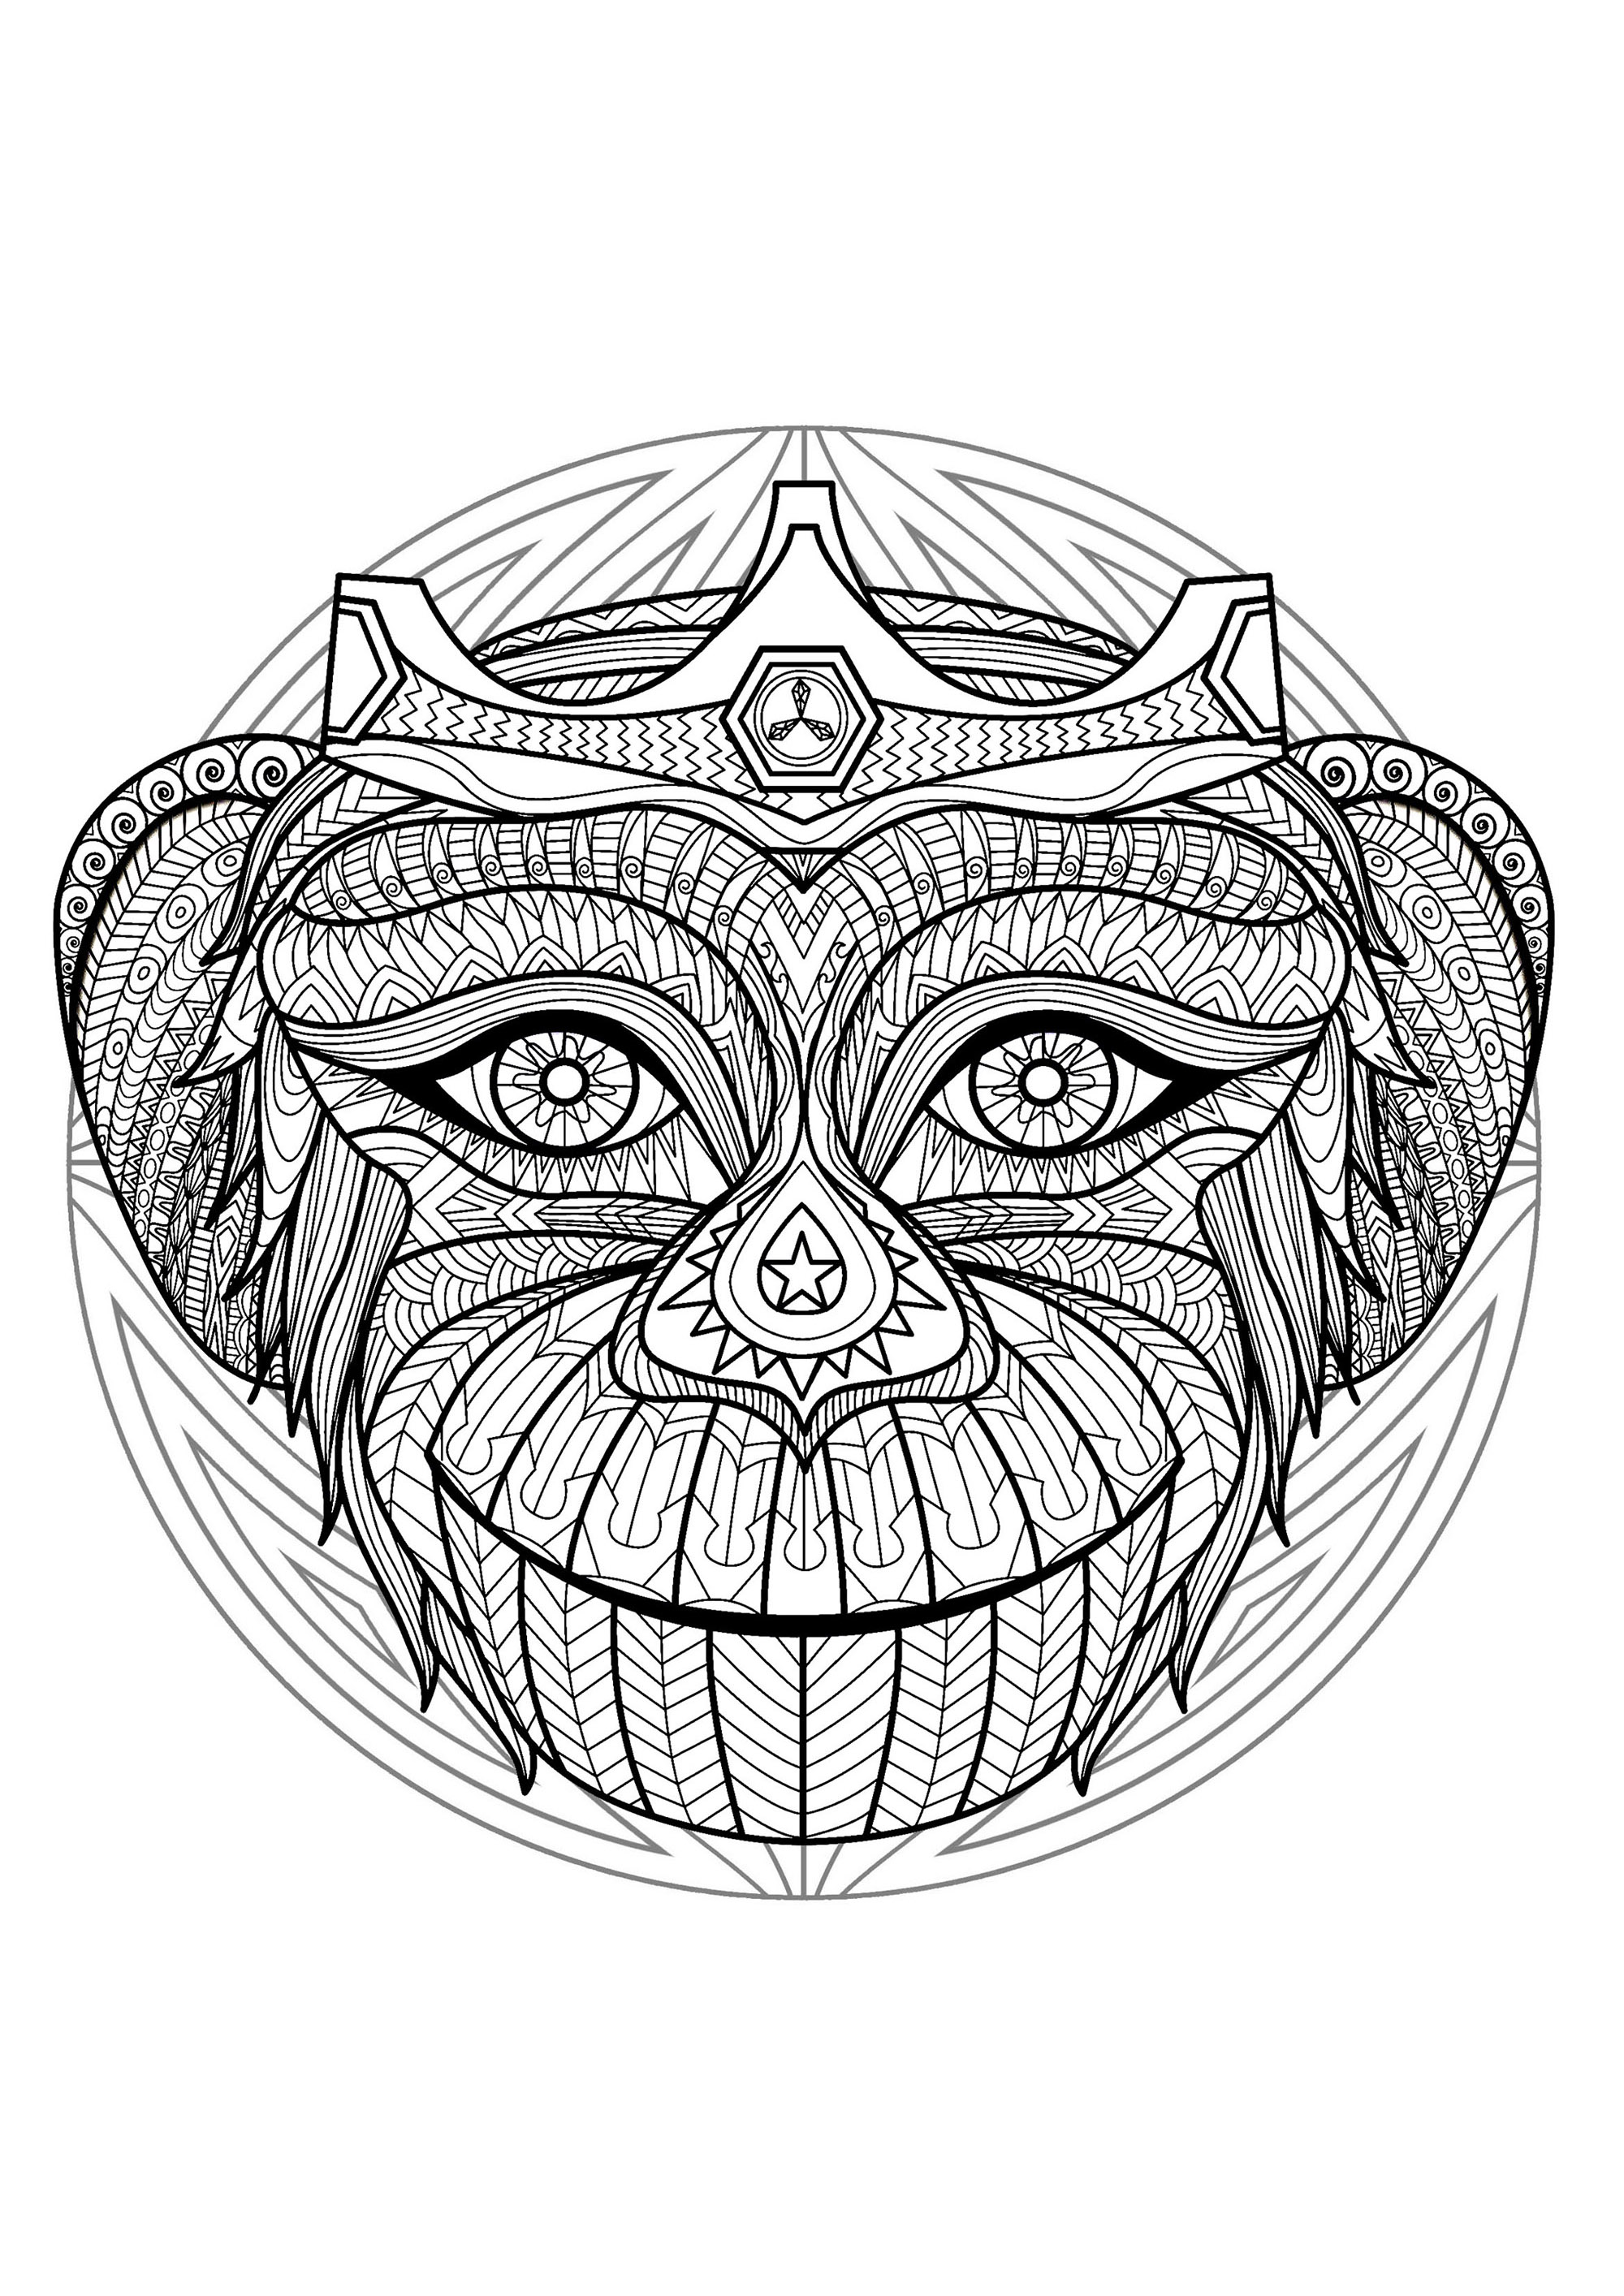 Mandala zum Ausmalen mit ganz besonderem Affenkopf und einfachen Mustern im Hintergrund